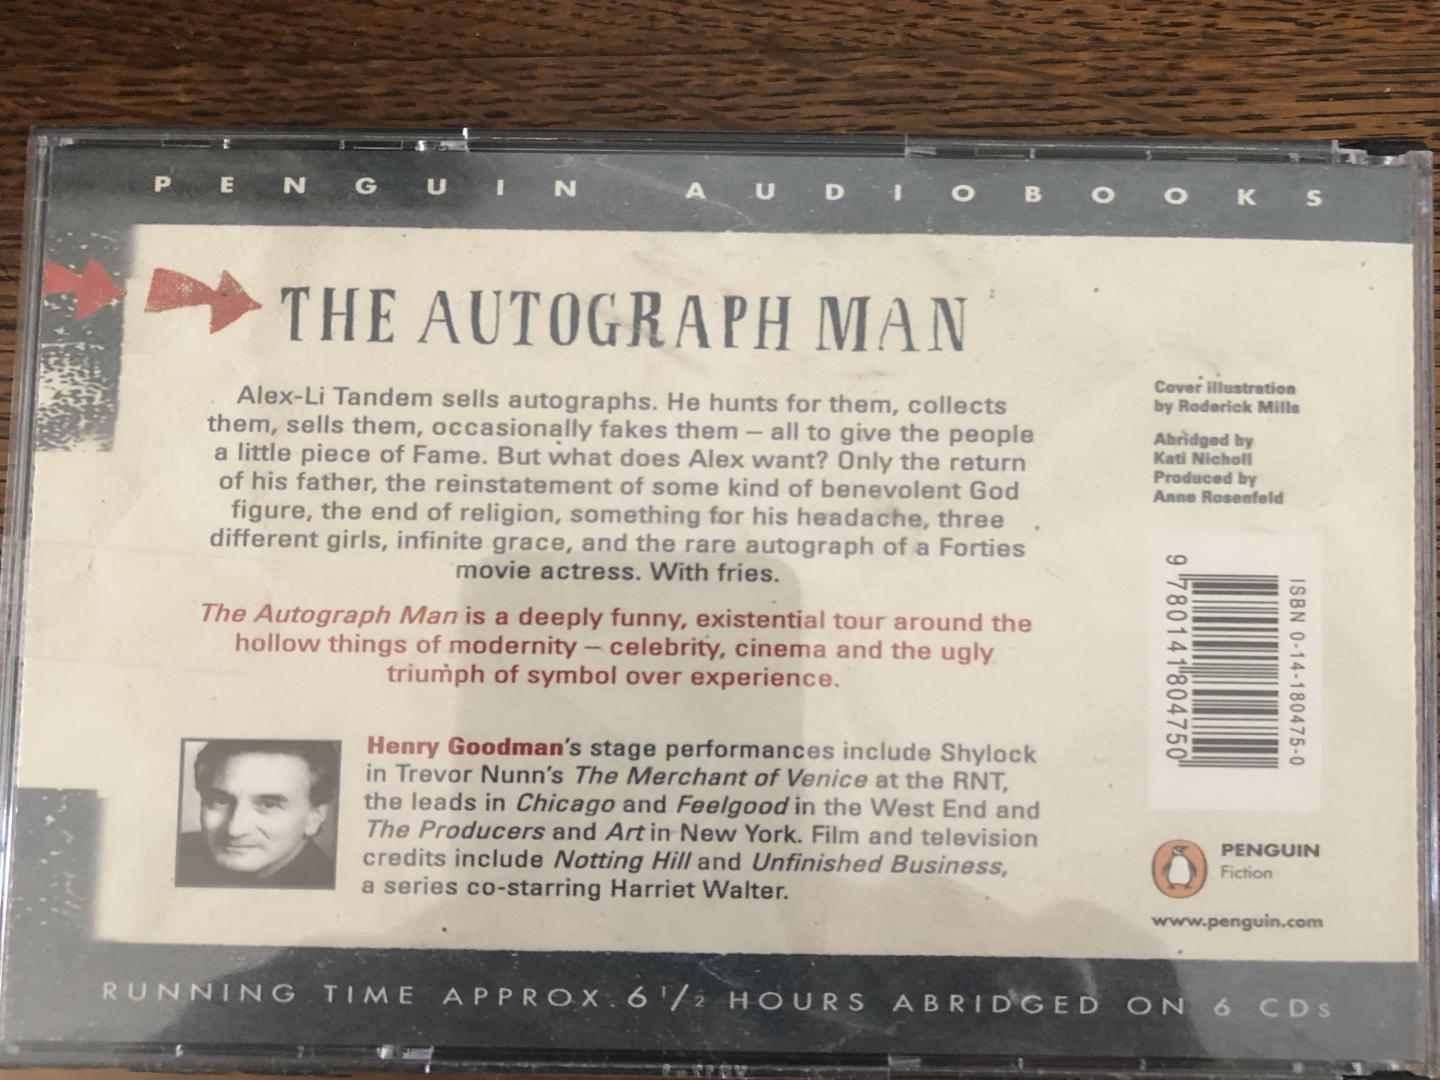 Smith, Zadie - The autograph man